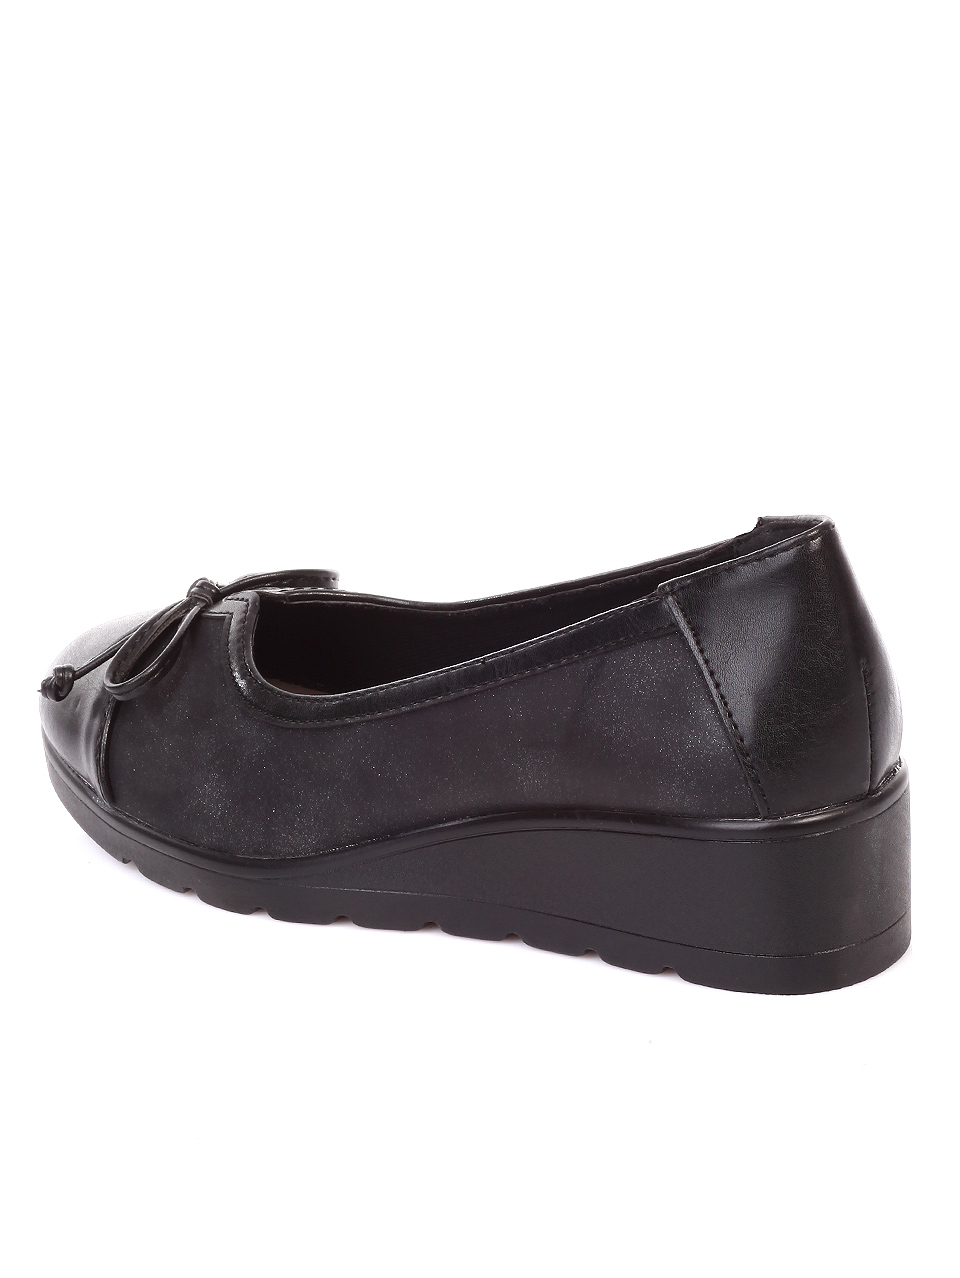 Ежедневни дамски обувки на платформа в черно 3C-19737 black